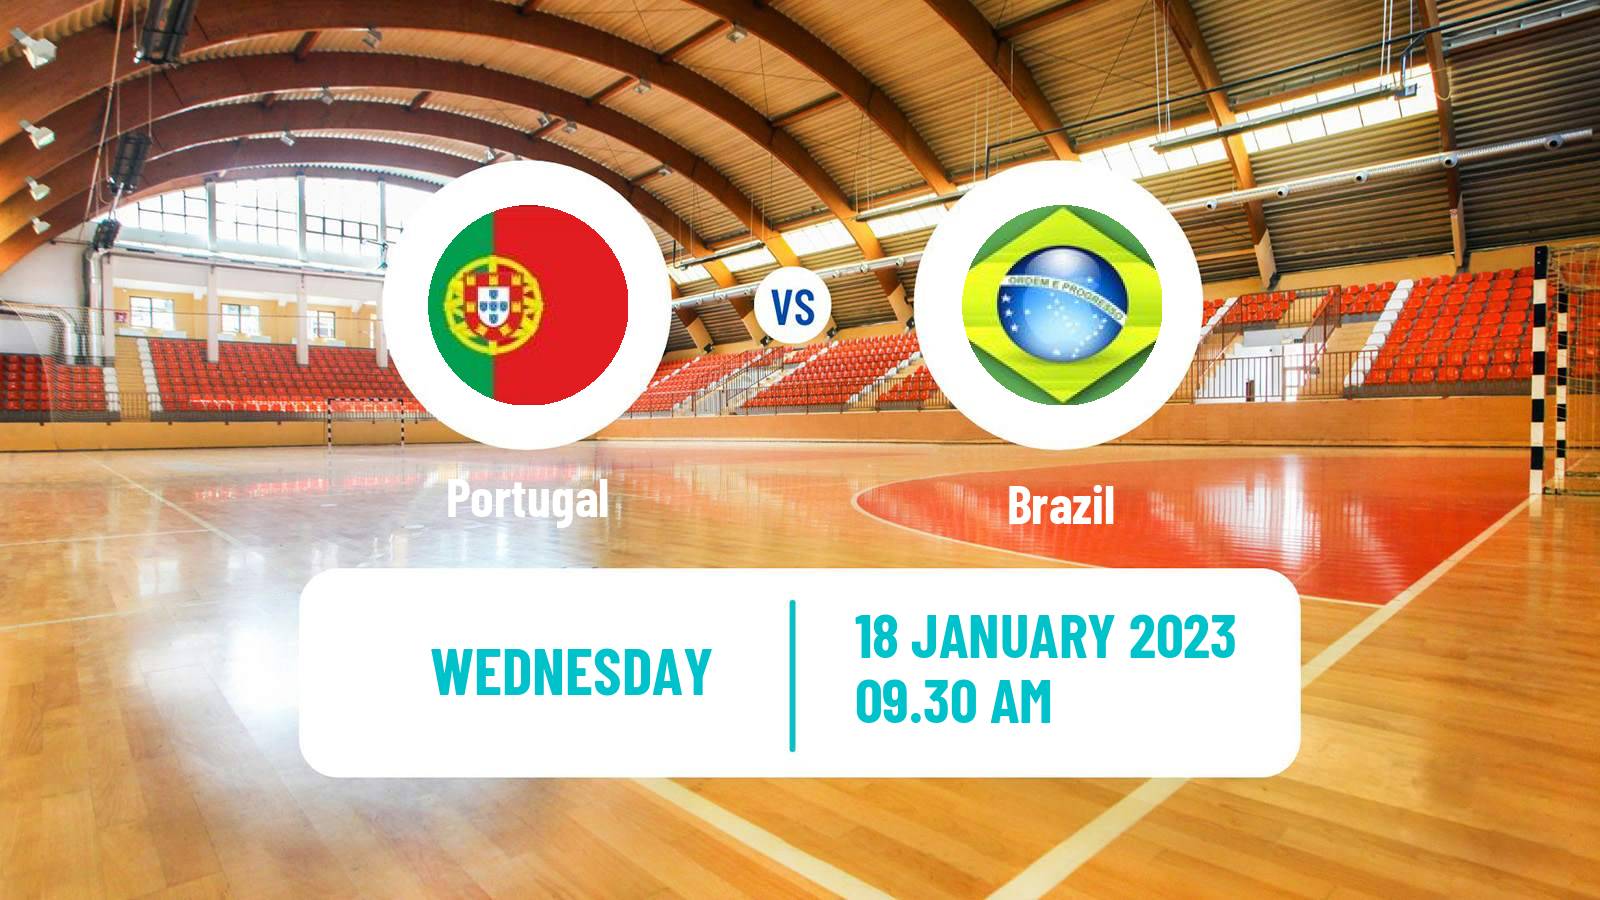 Handball Handball World Championship Portugal - Brazil